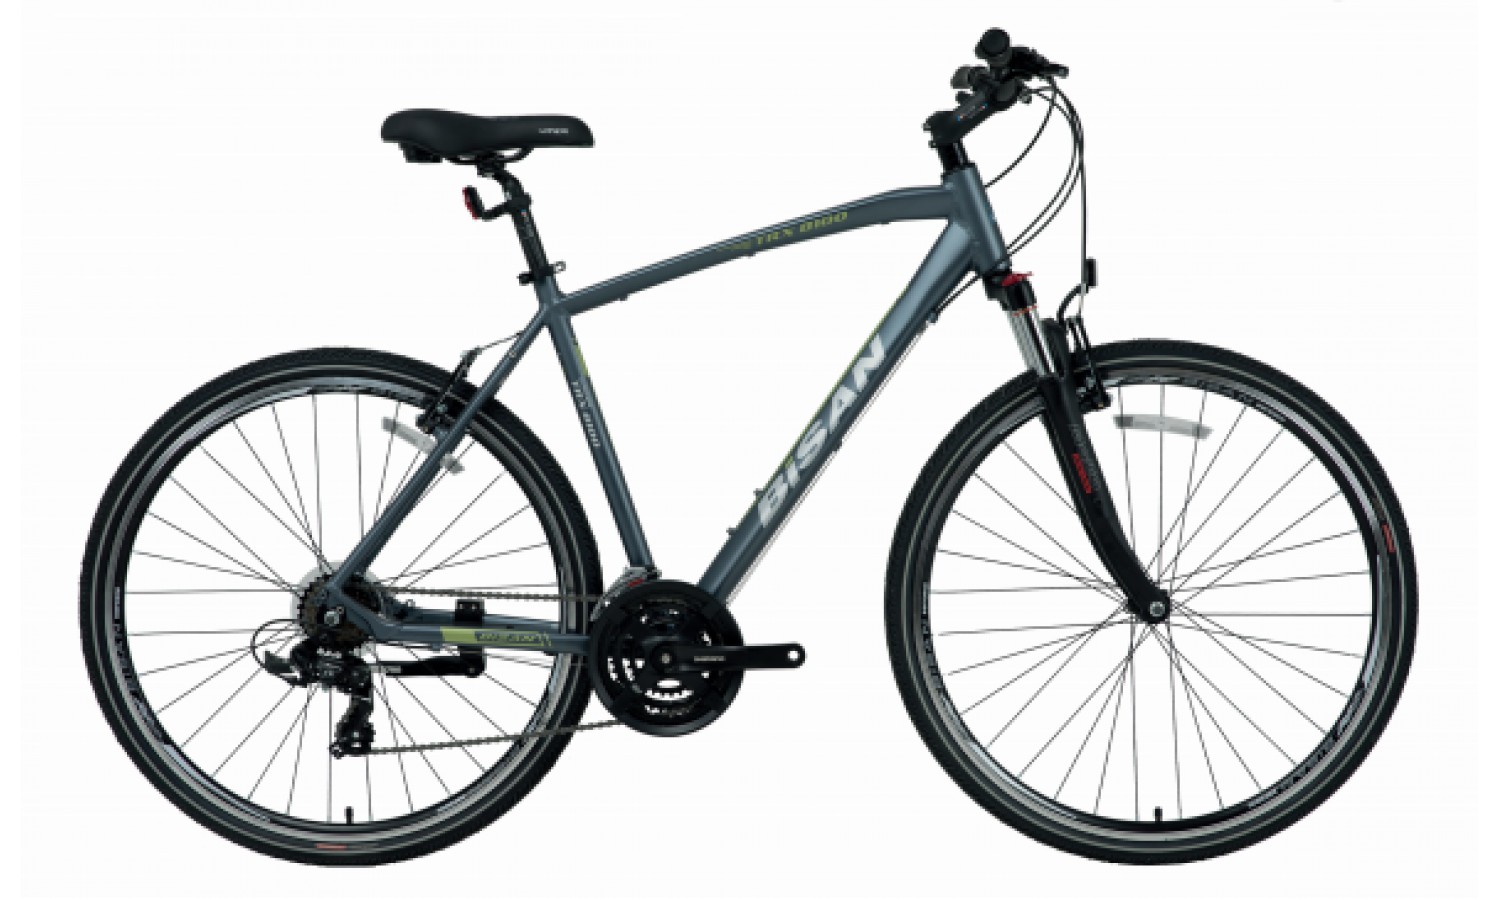 Bisan Trx 8100 28 V Trekking Bisiklet (Gri Siyah)